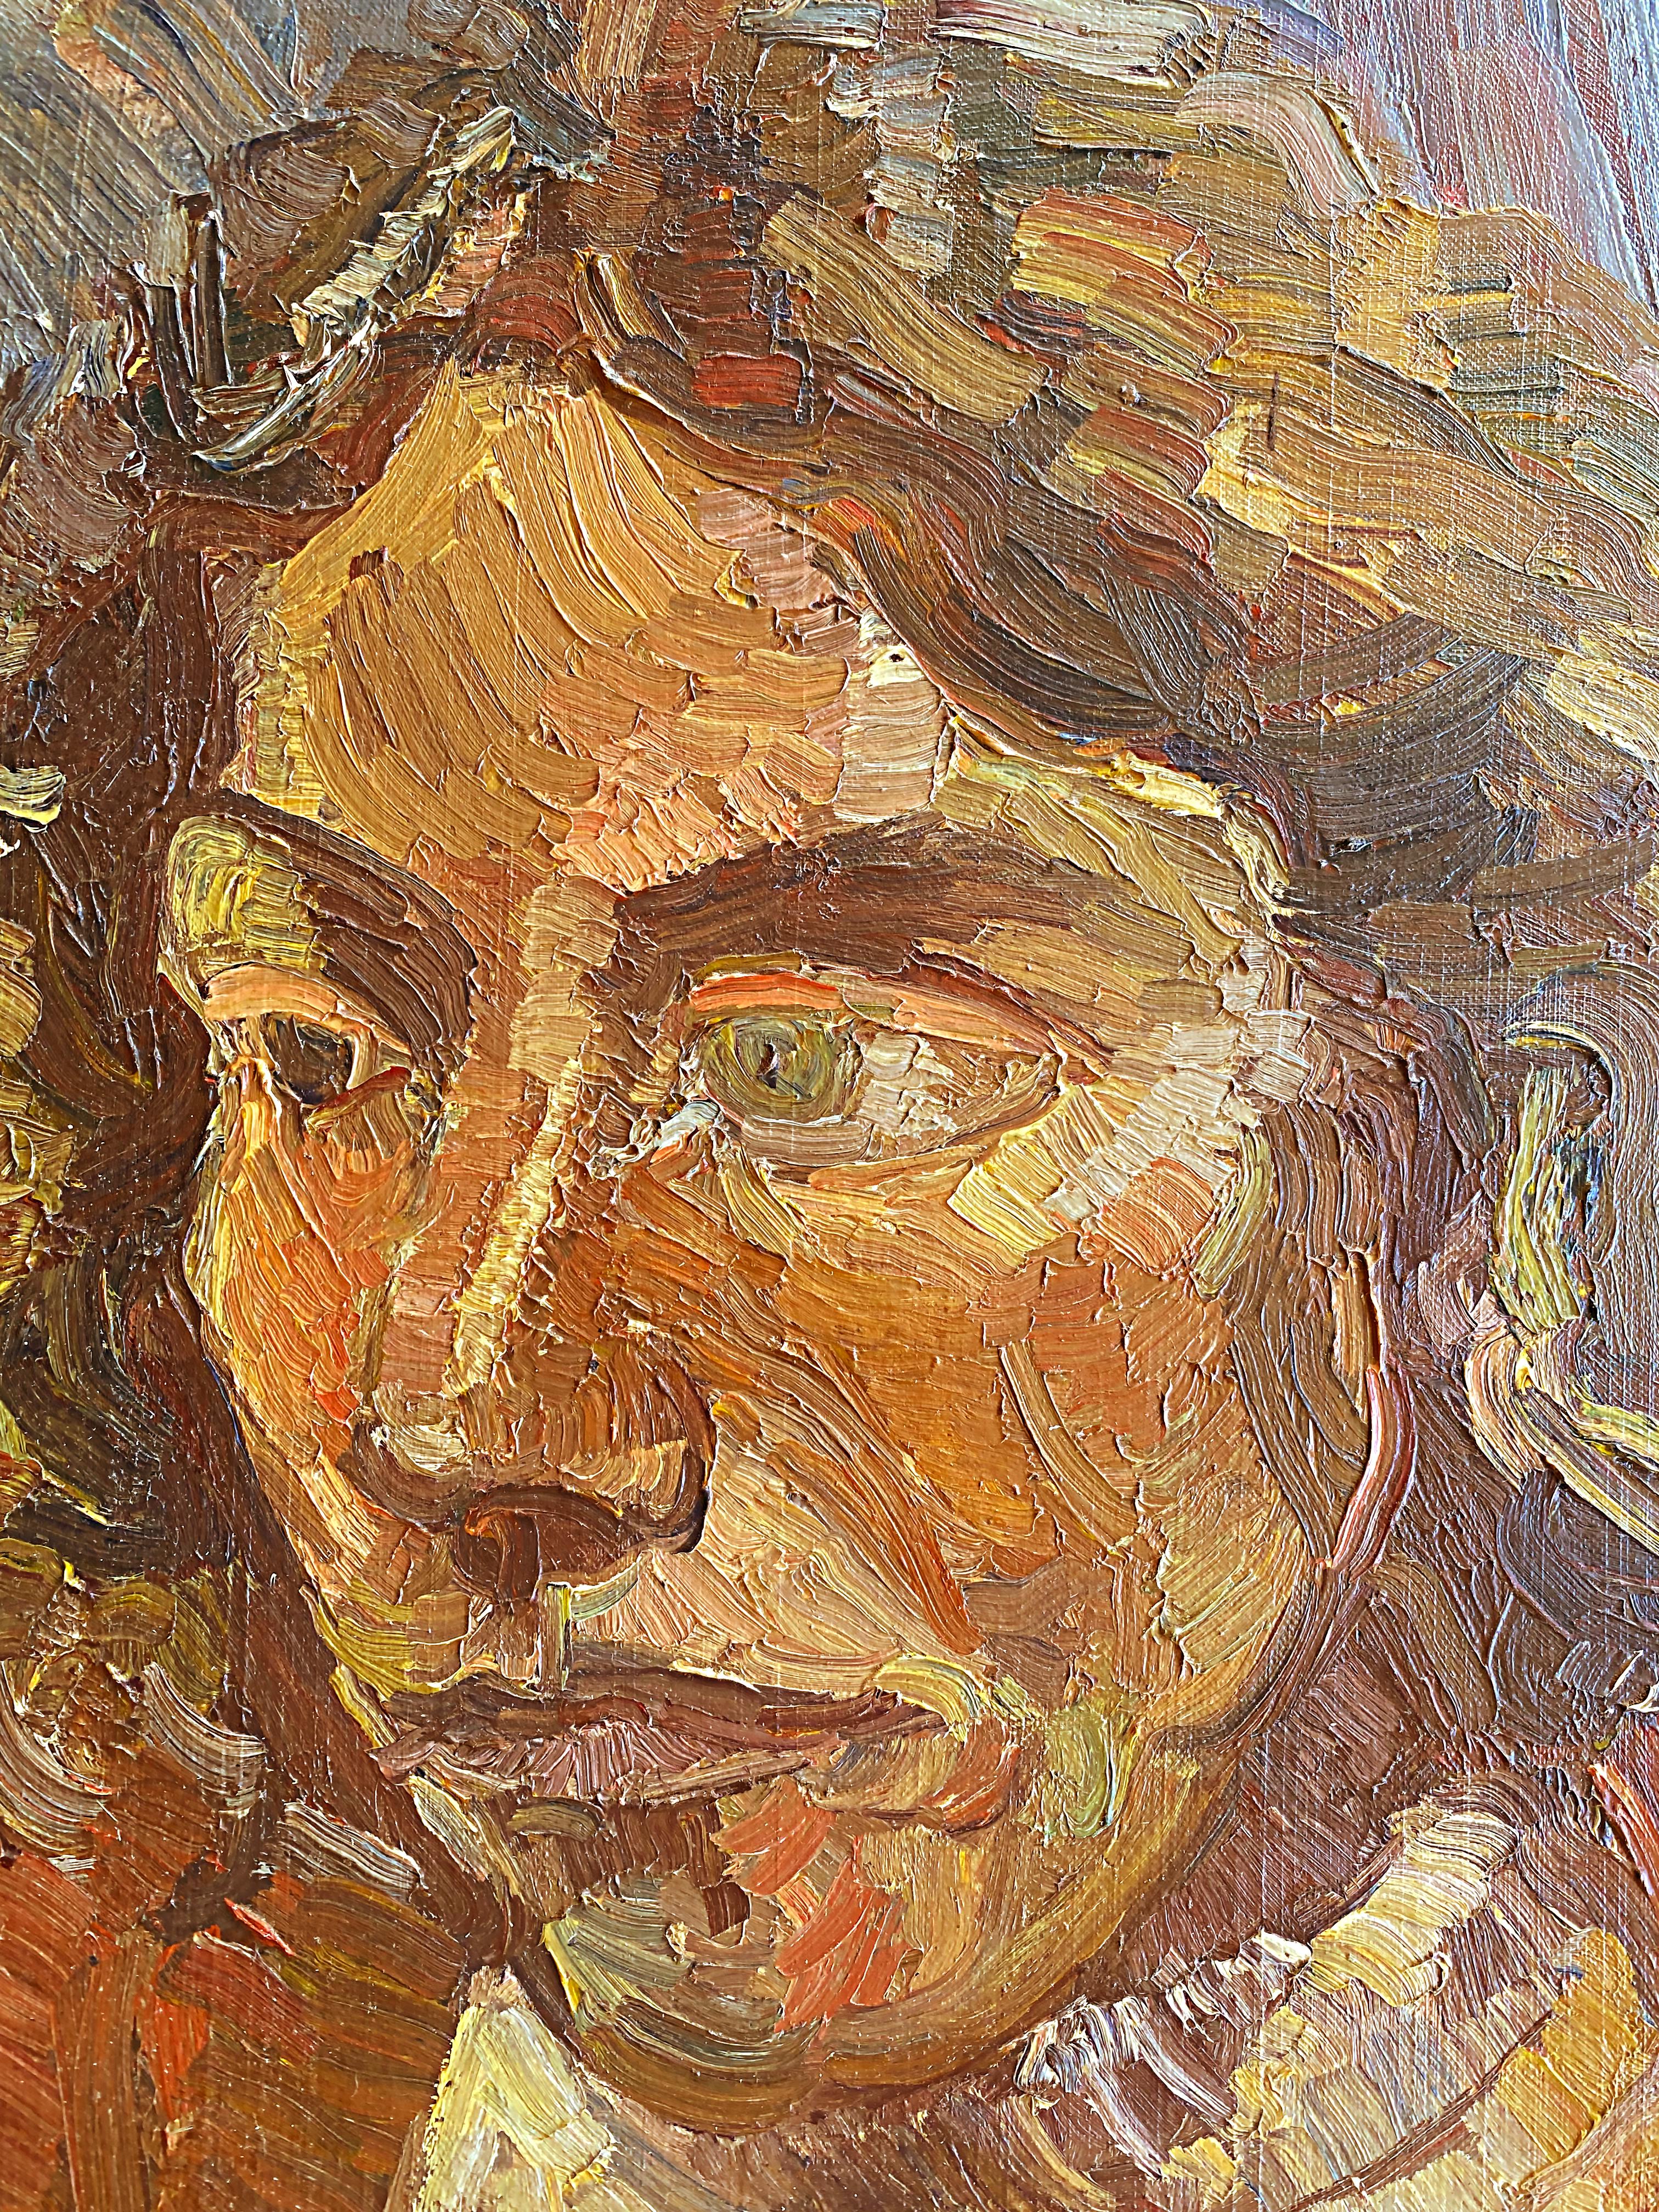 1973 Peinture à l'huile abstraite figurative de Warren Fischer, signée.

Nous proposons à la vente une peinture abstraite figurative à l'huile sur toile de lin de l'artiste américain Warren Fischer (1943-2001). Le tableau fait partie de la